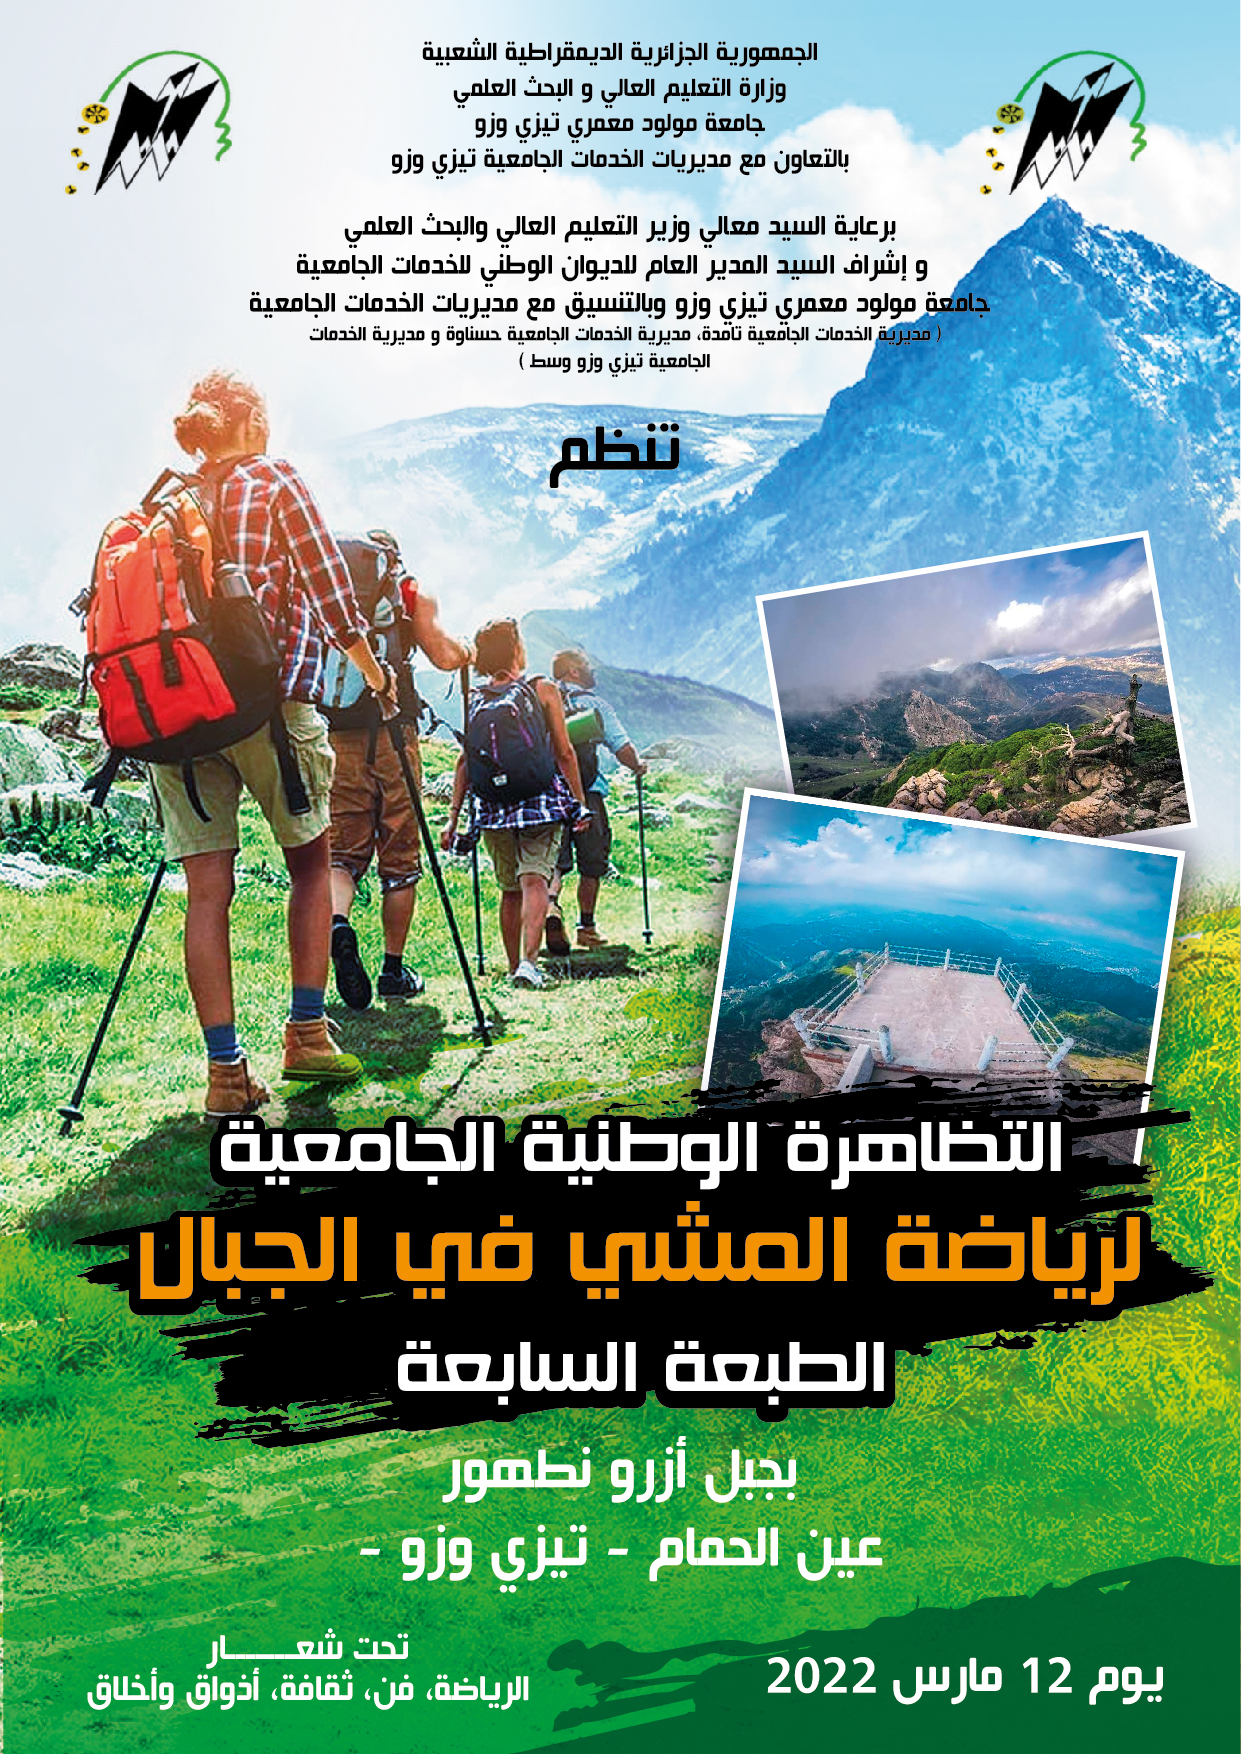 تنظيم الطبعة السابعة للتظاهرةالوطنية الجامعية لرياضة المشي في الجبال